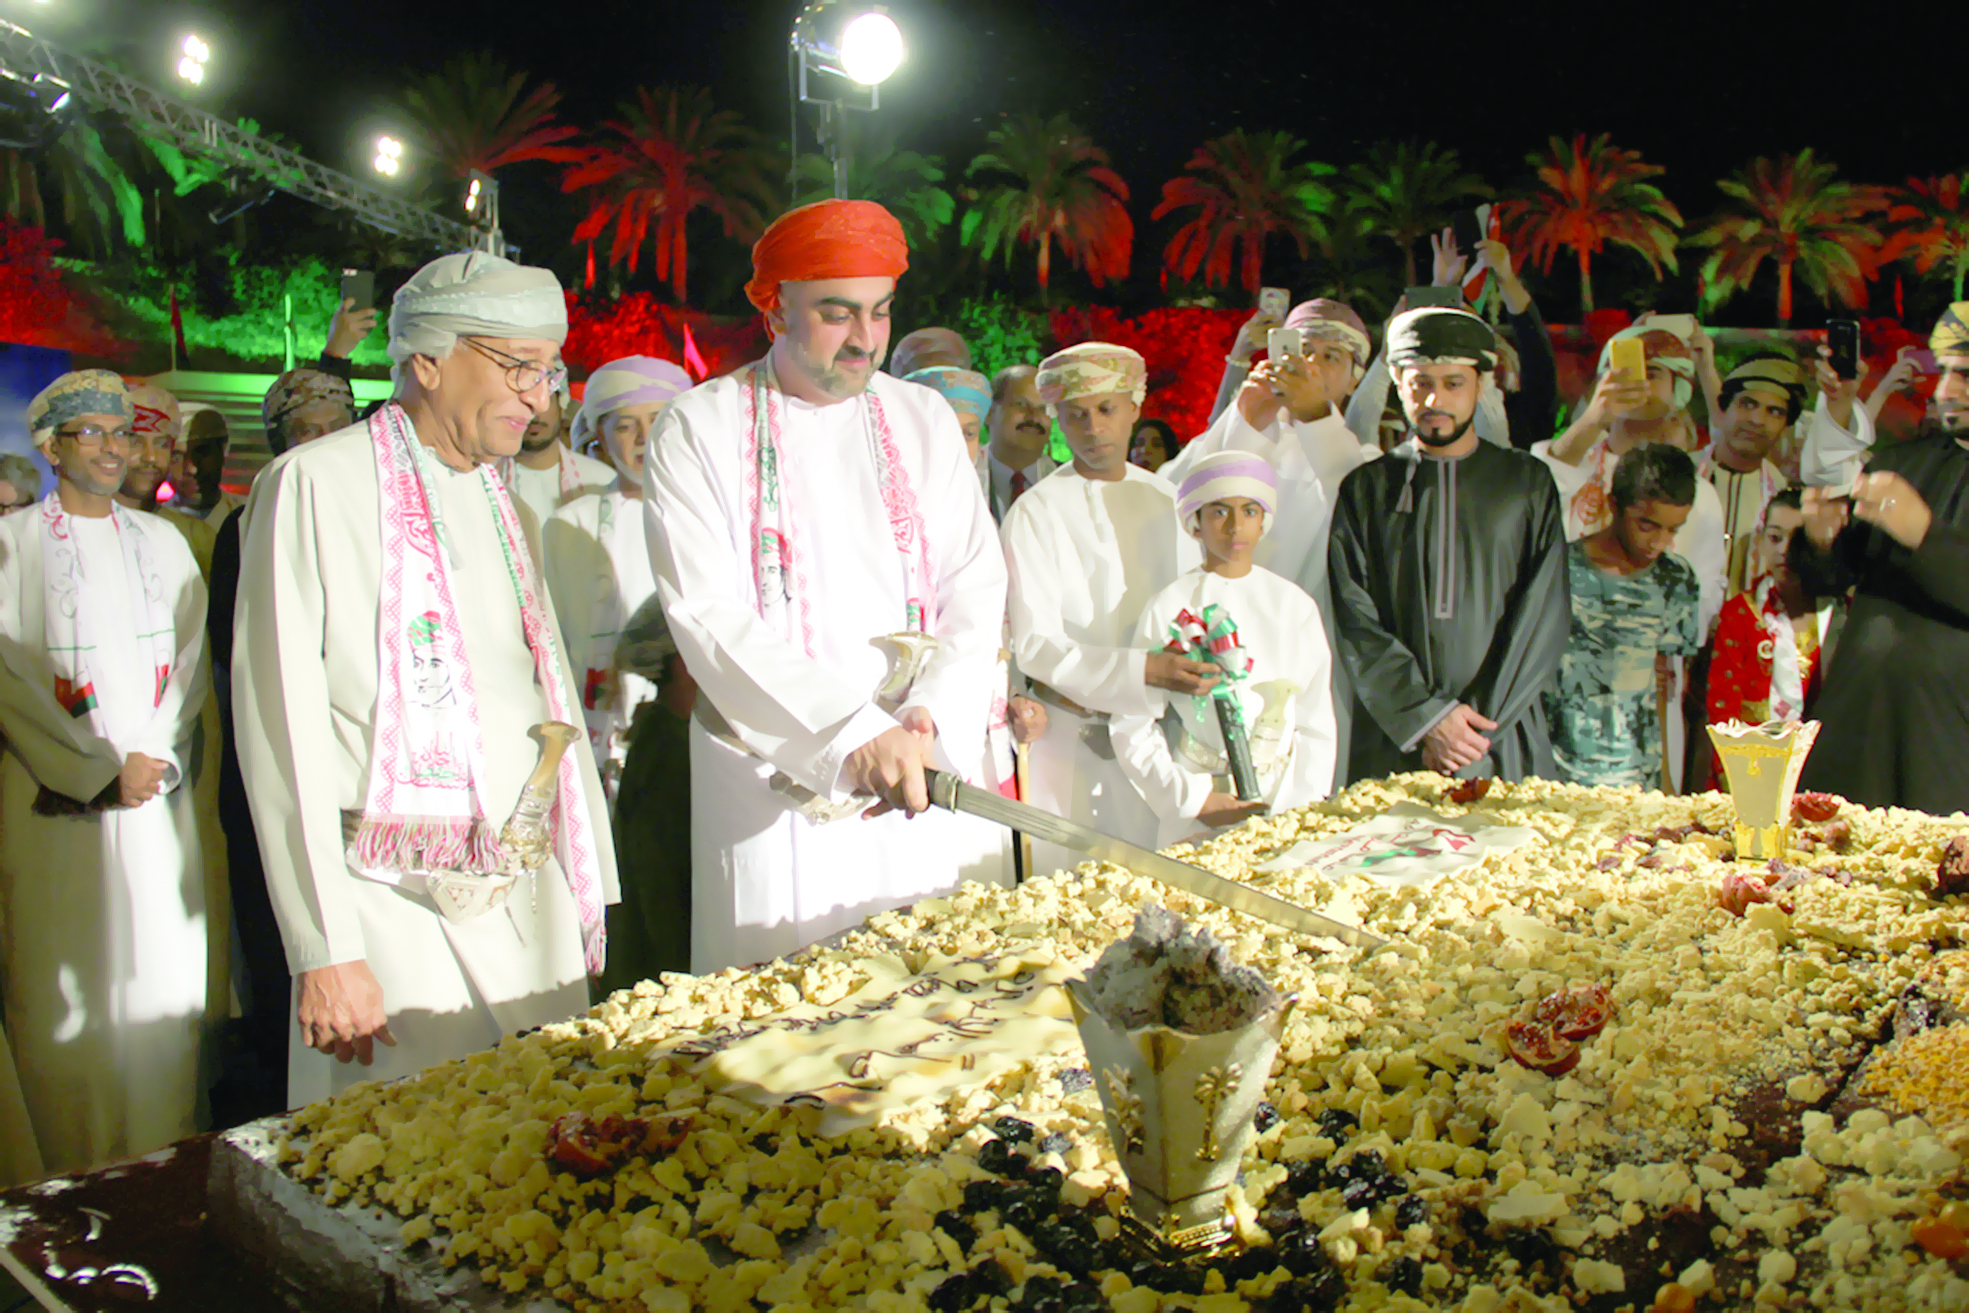 احتفال كبير في منتجع شانجريلا بر الجصة بمناسبة العيد الوطني المجيد